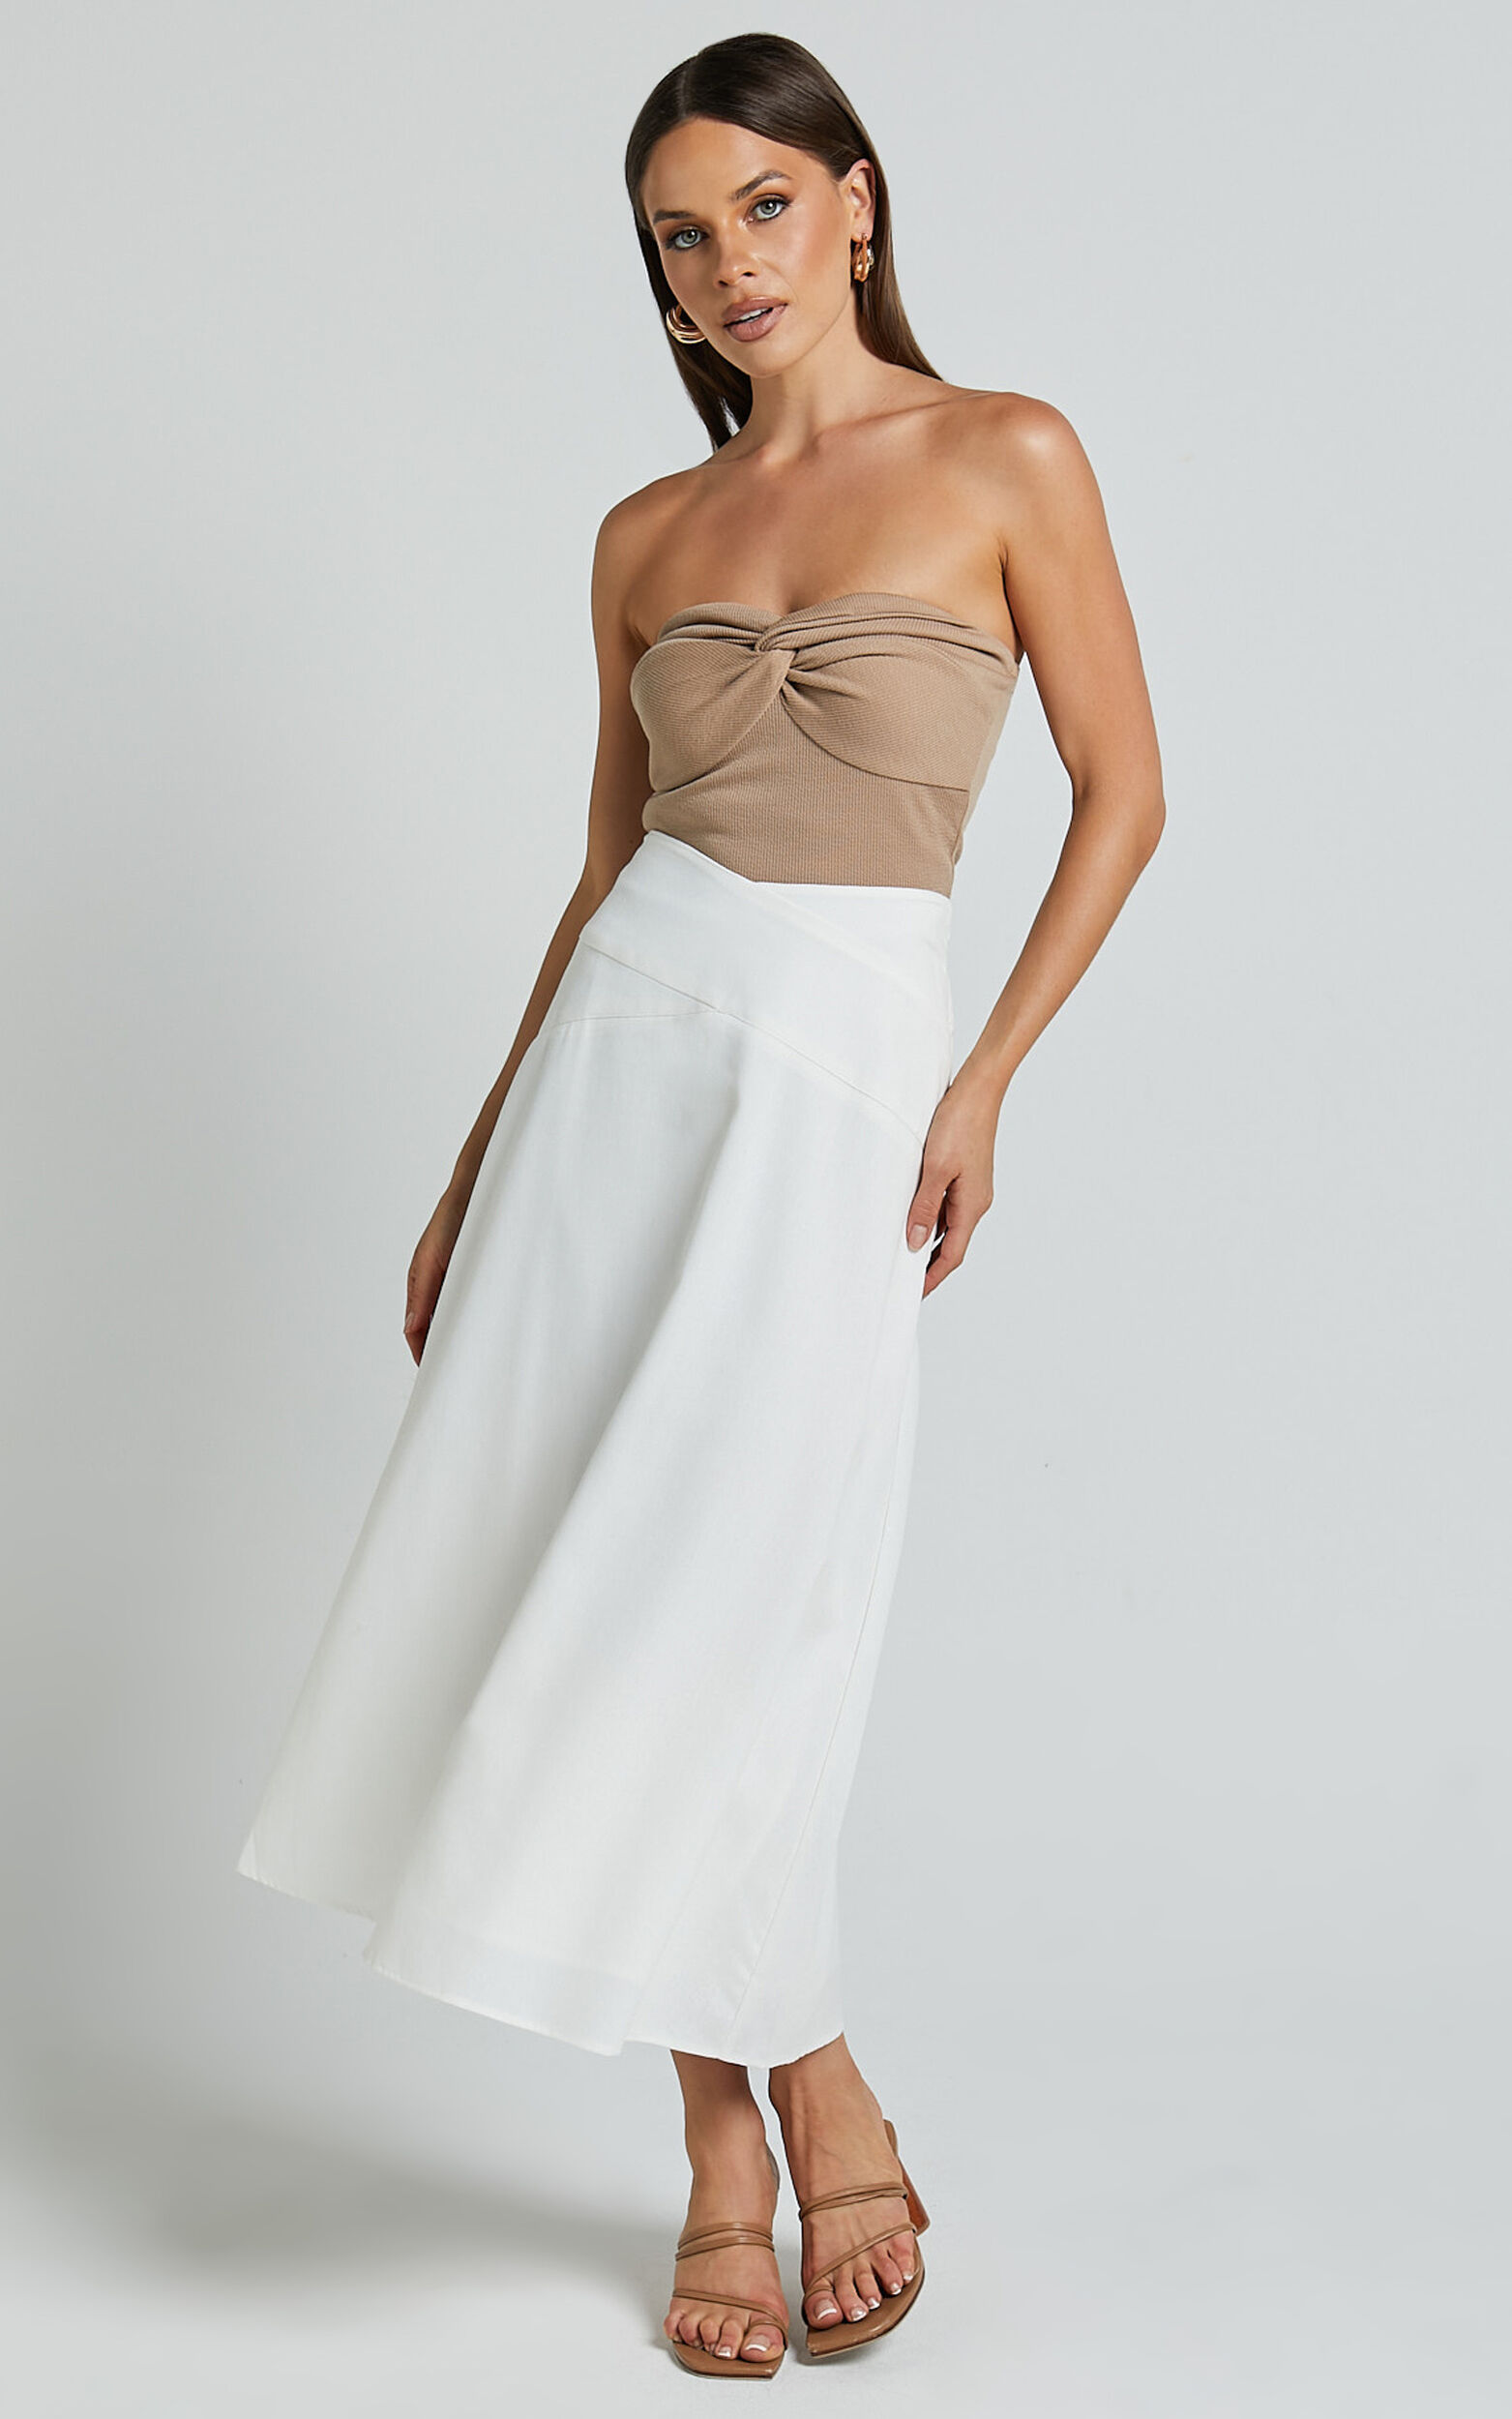 Sundry Midi Skirt - Linen Look High Waisted Cross Front Detail Skirt in Off White - 06, WHT1